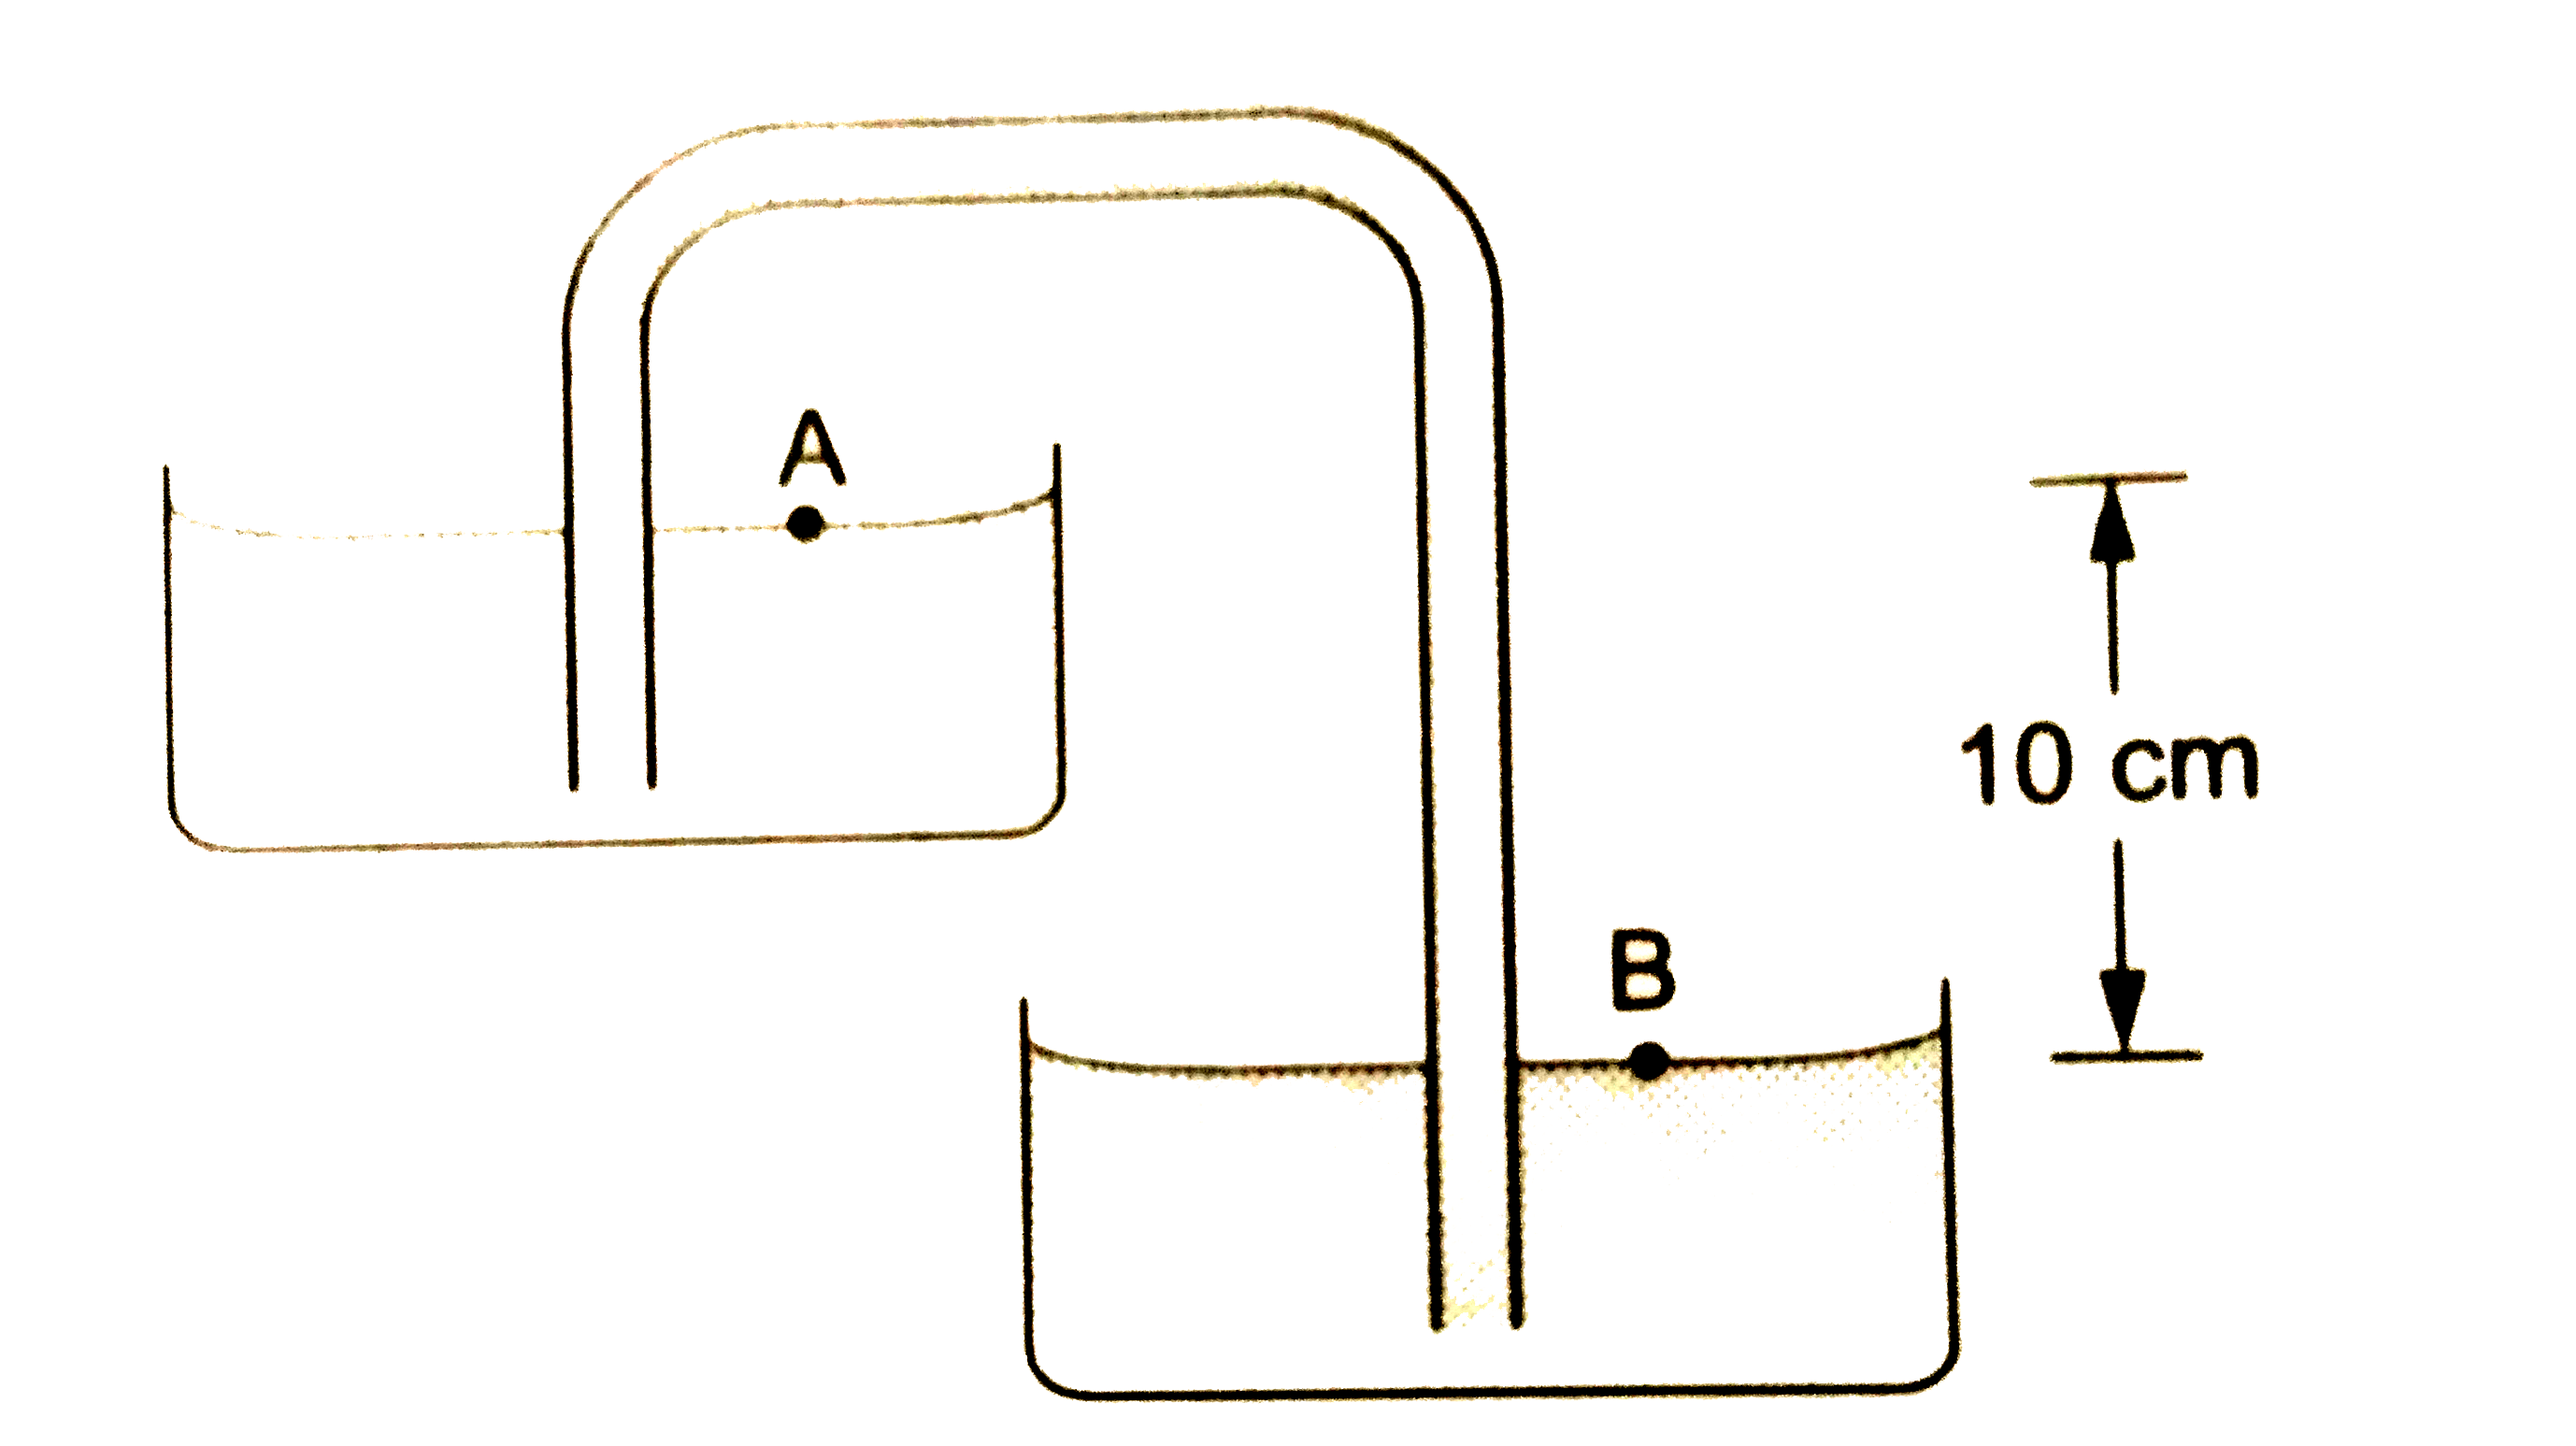 चित्र 24.Q2 में एक साइफन दिखाया गया है जिसमें पानी भरा है | बिंदुओं A तथा B के बीच दाब का अंतर p(B)-p(A) का मान होगा